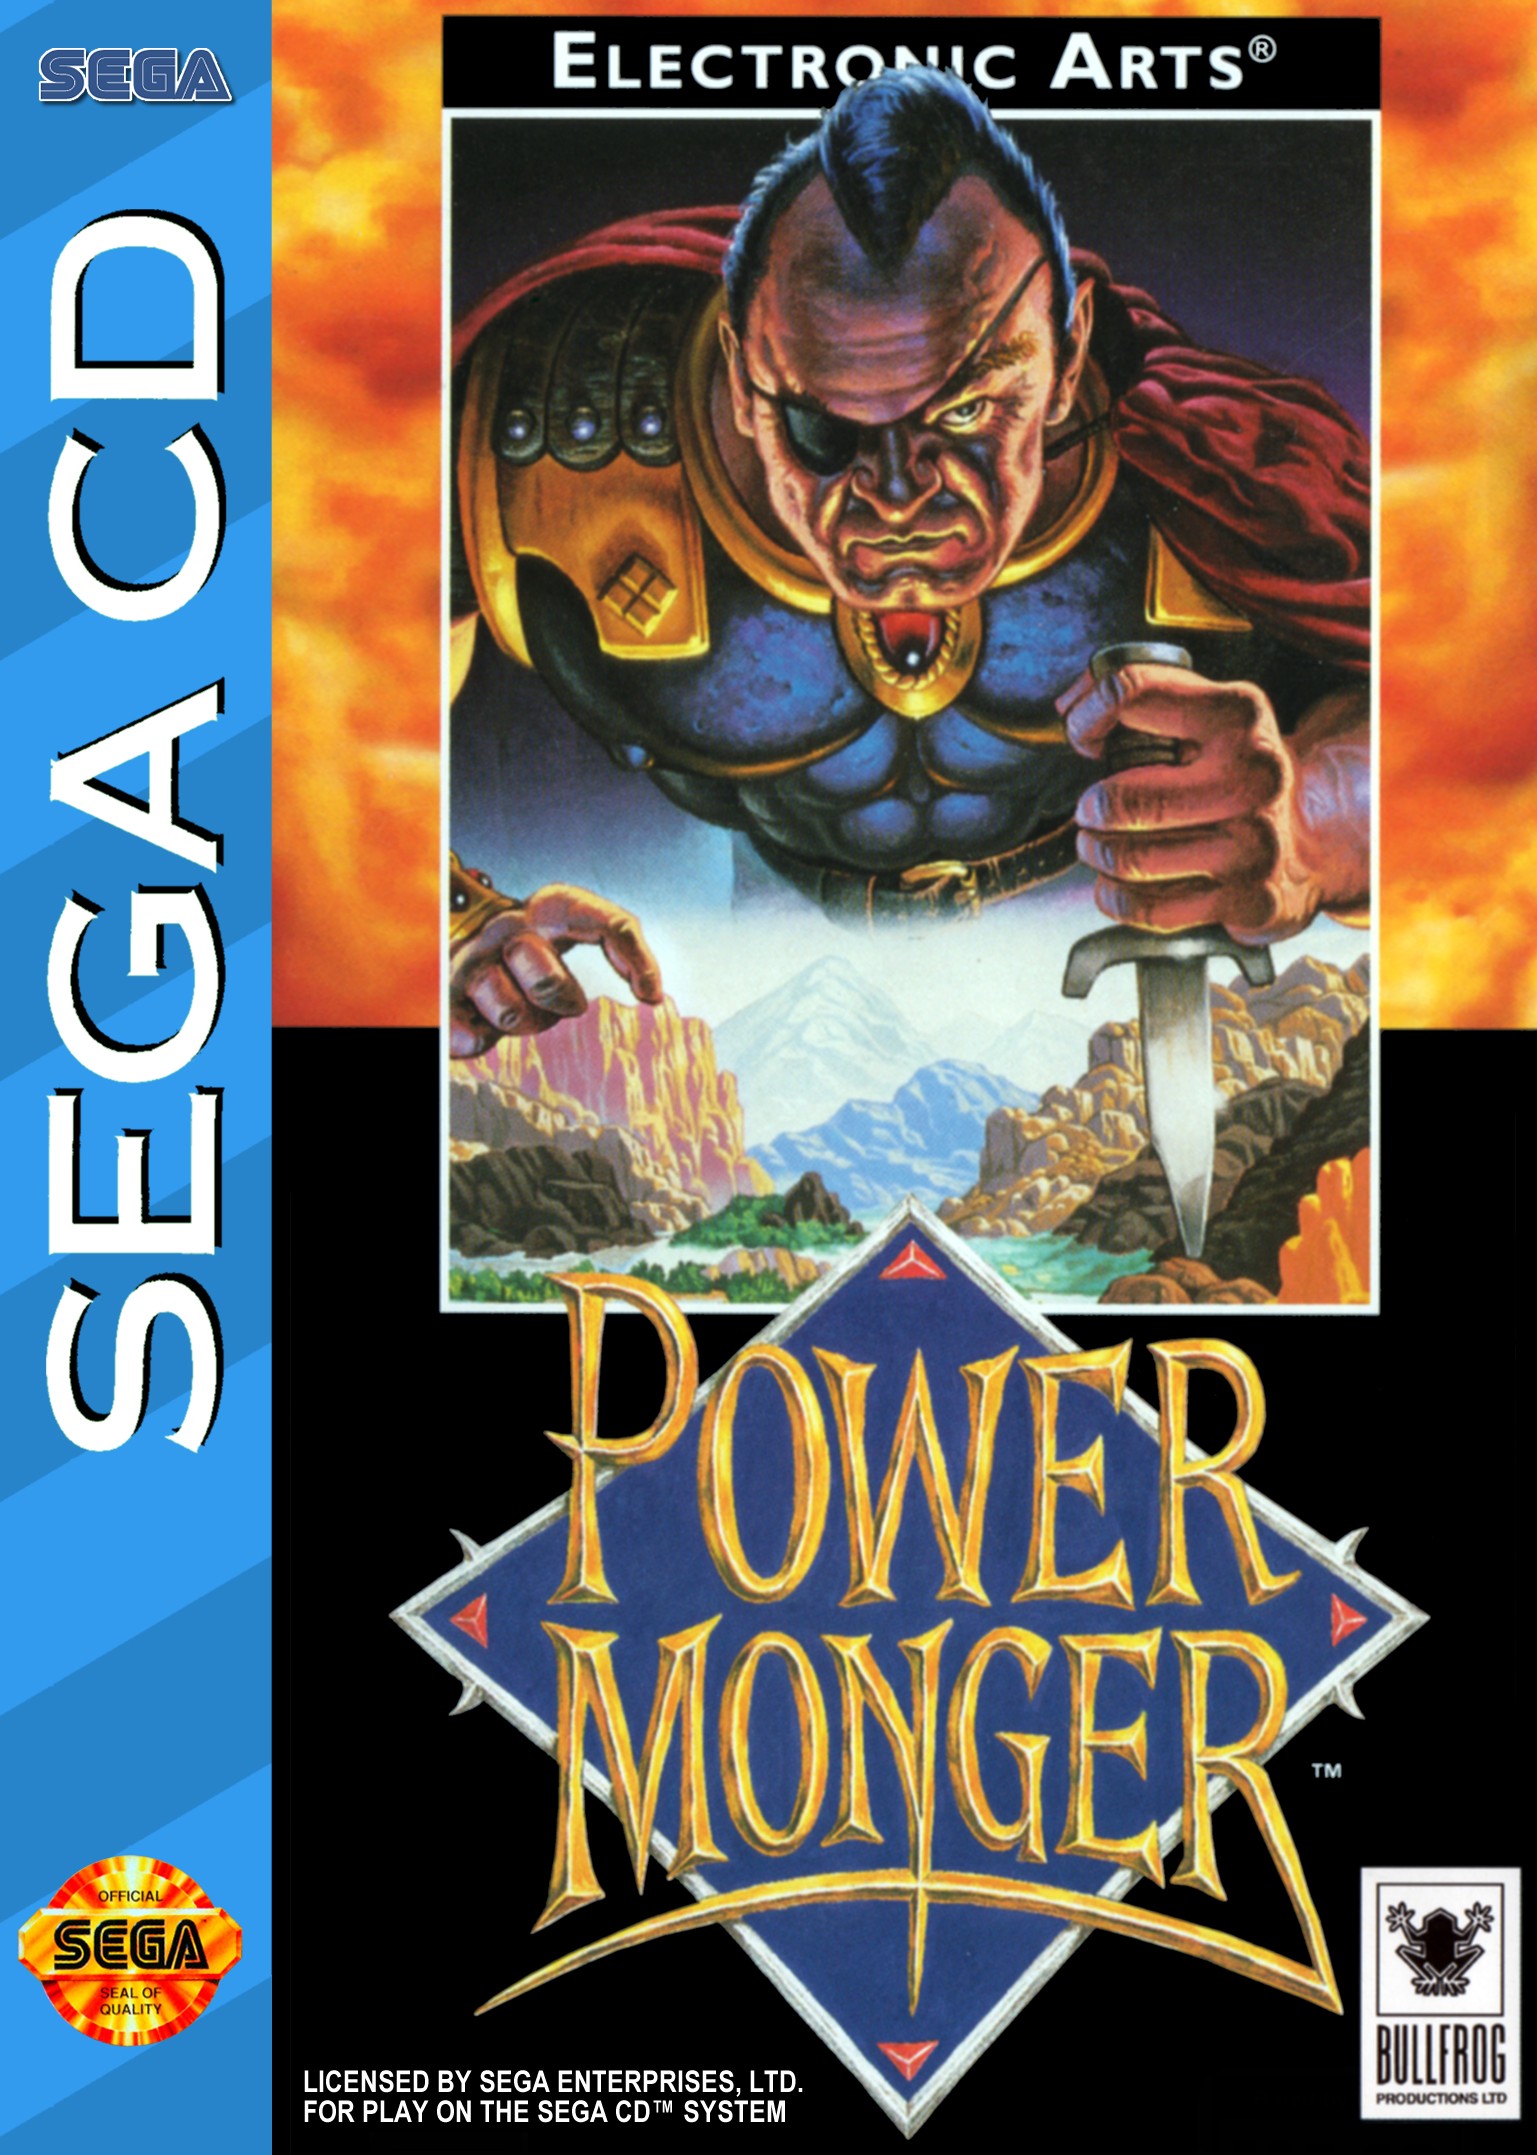 'Power Monger'